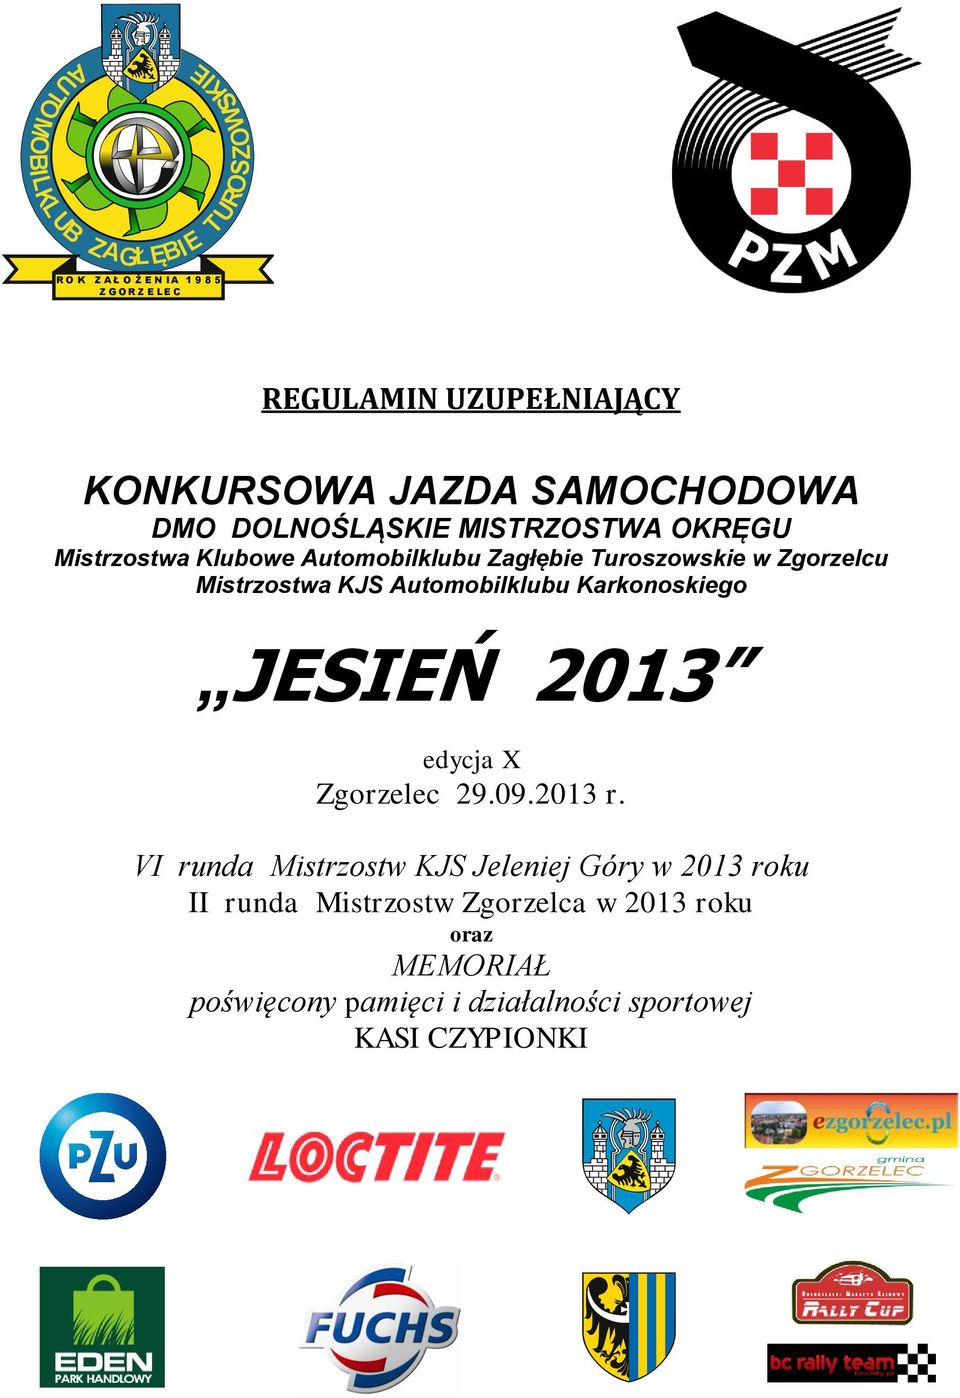 Mistrzostwa KJS Automobilklubu Karkonoskiego JESIEŃ 2013 edycja X Zgorzelec 29.09.2013 r.